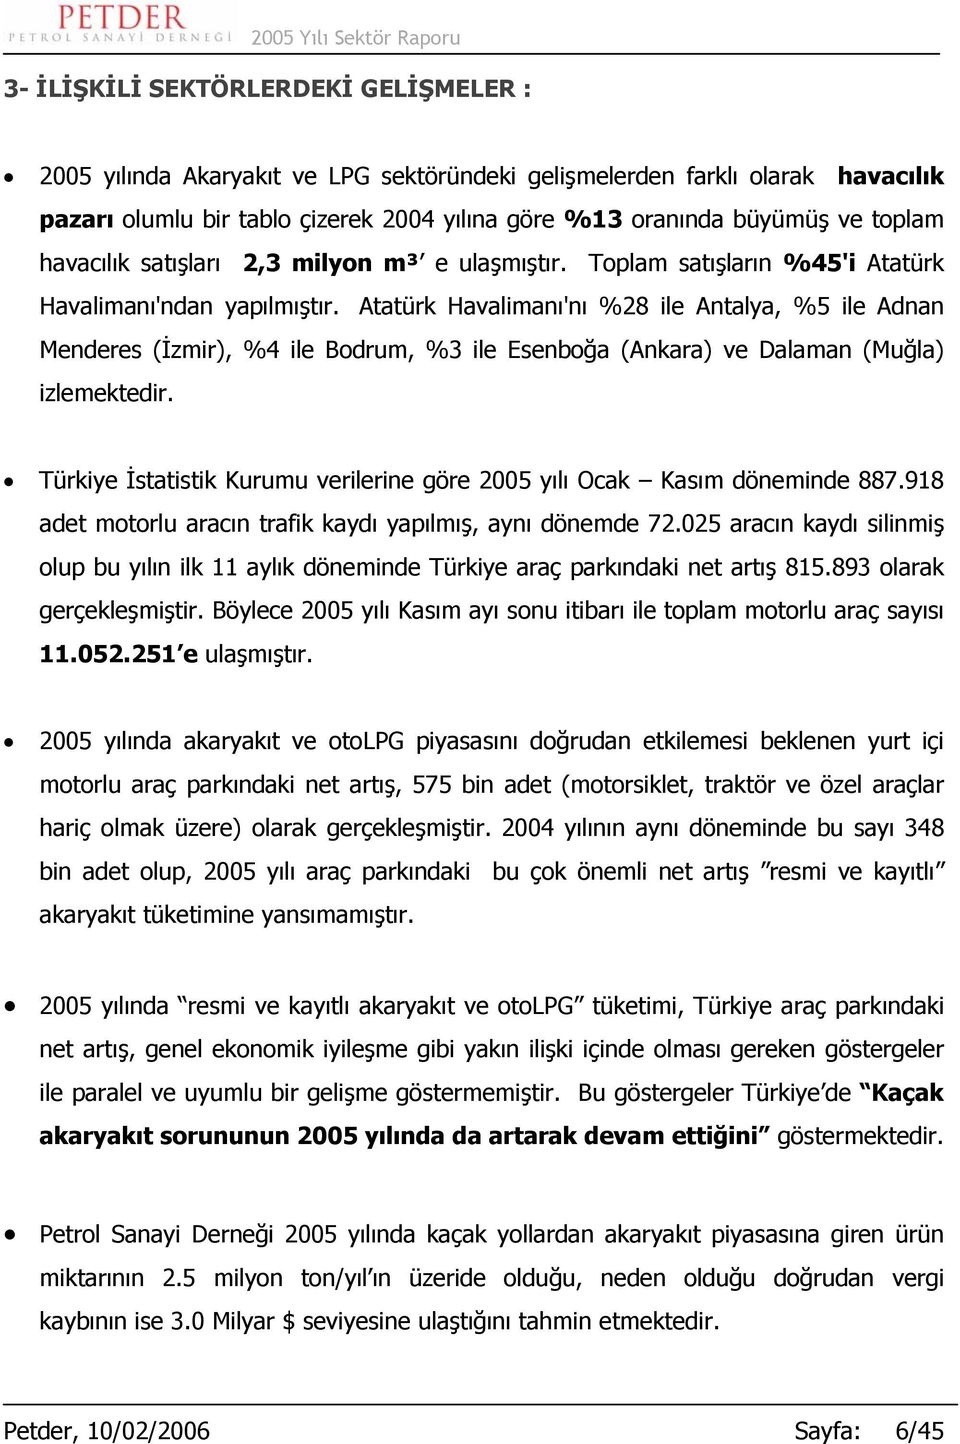 Atatürk Havalimanı'nı %28 ile Antalya, %5 ile Adnan Menderes (İzmir), %4 ile Bodrum, %3 ile Esenboğa (Ankara) ve Dalaman (Muğla) izlemektedir.